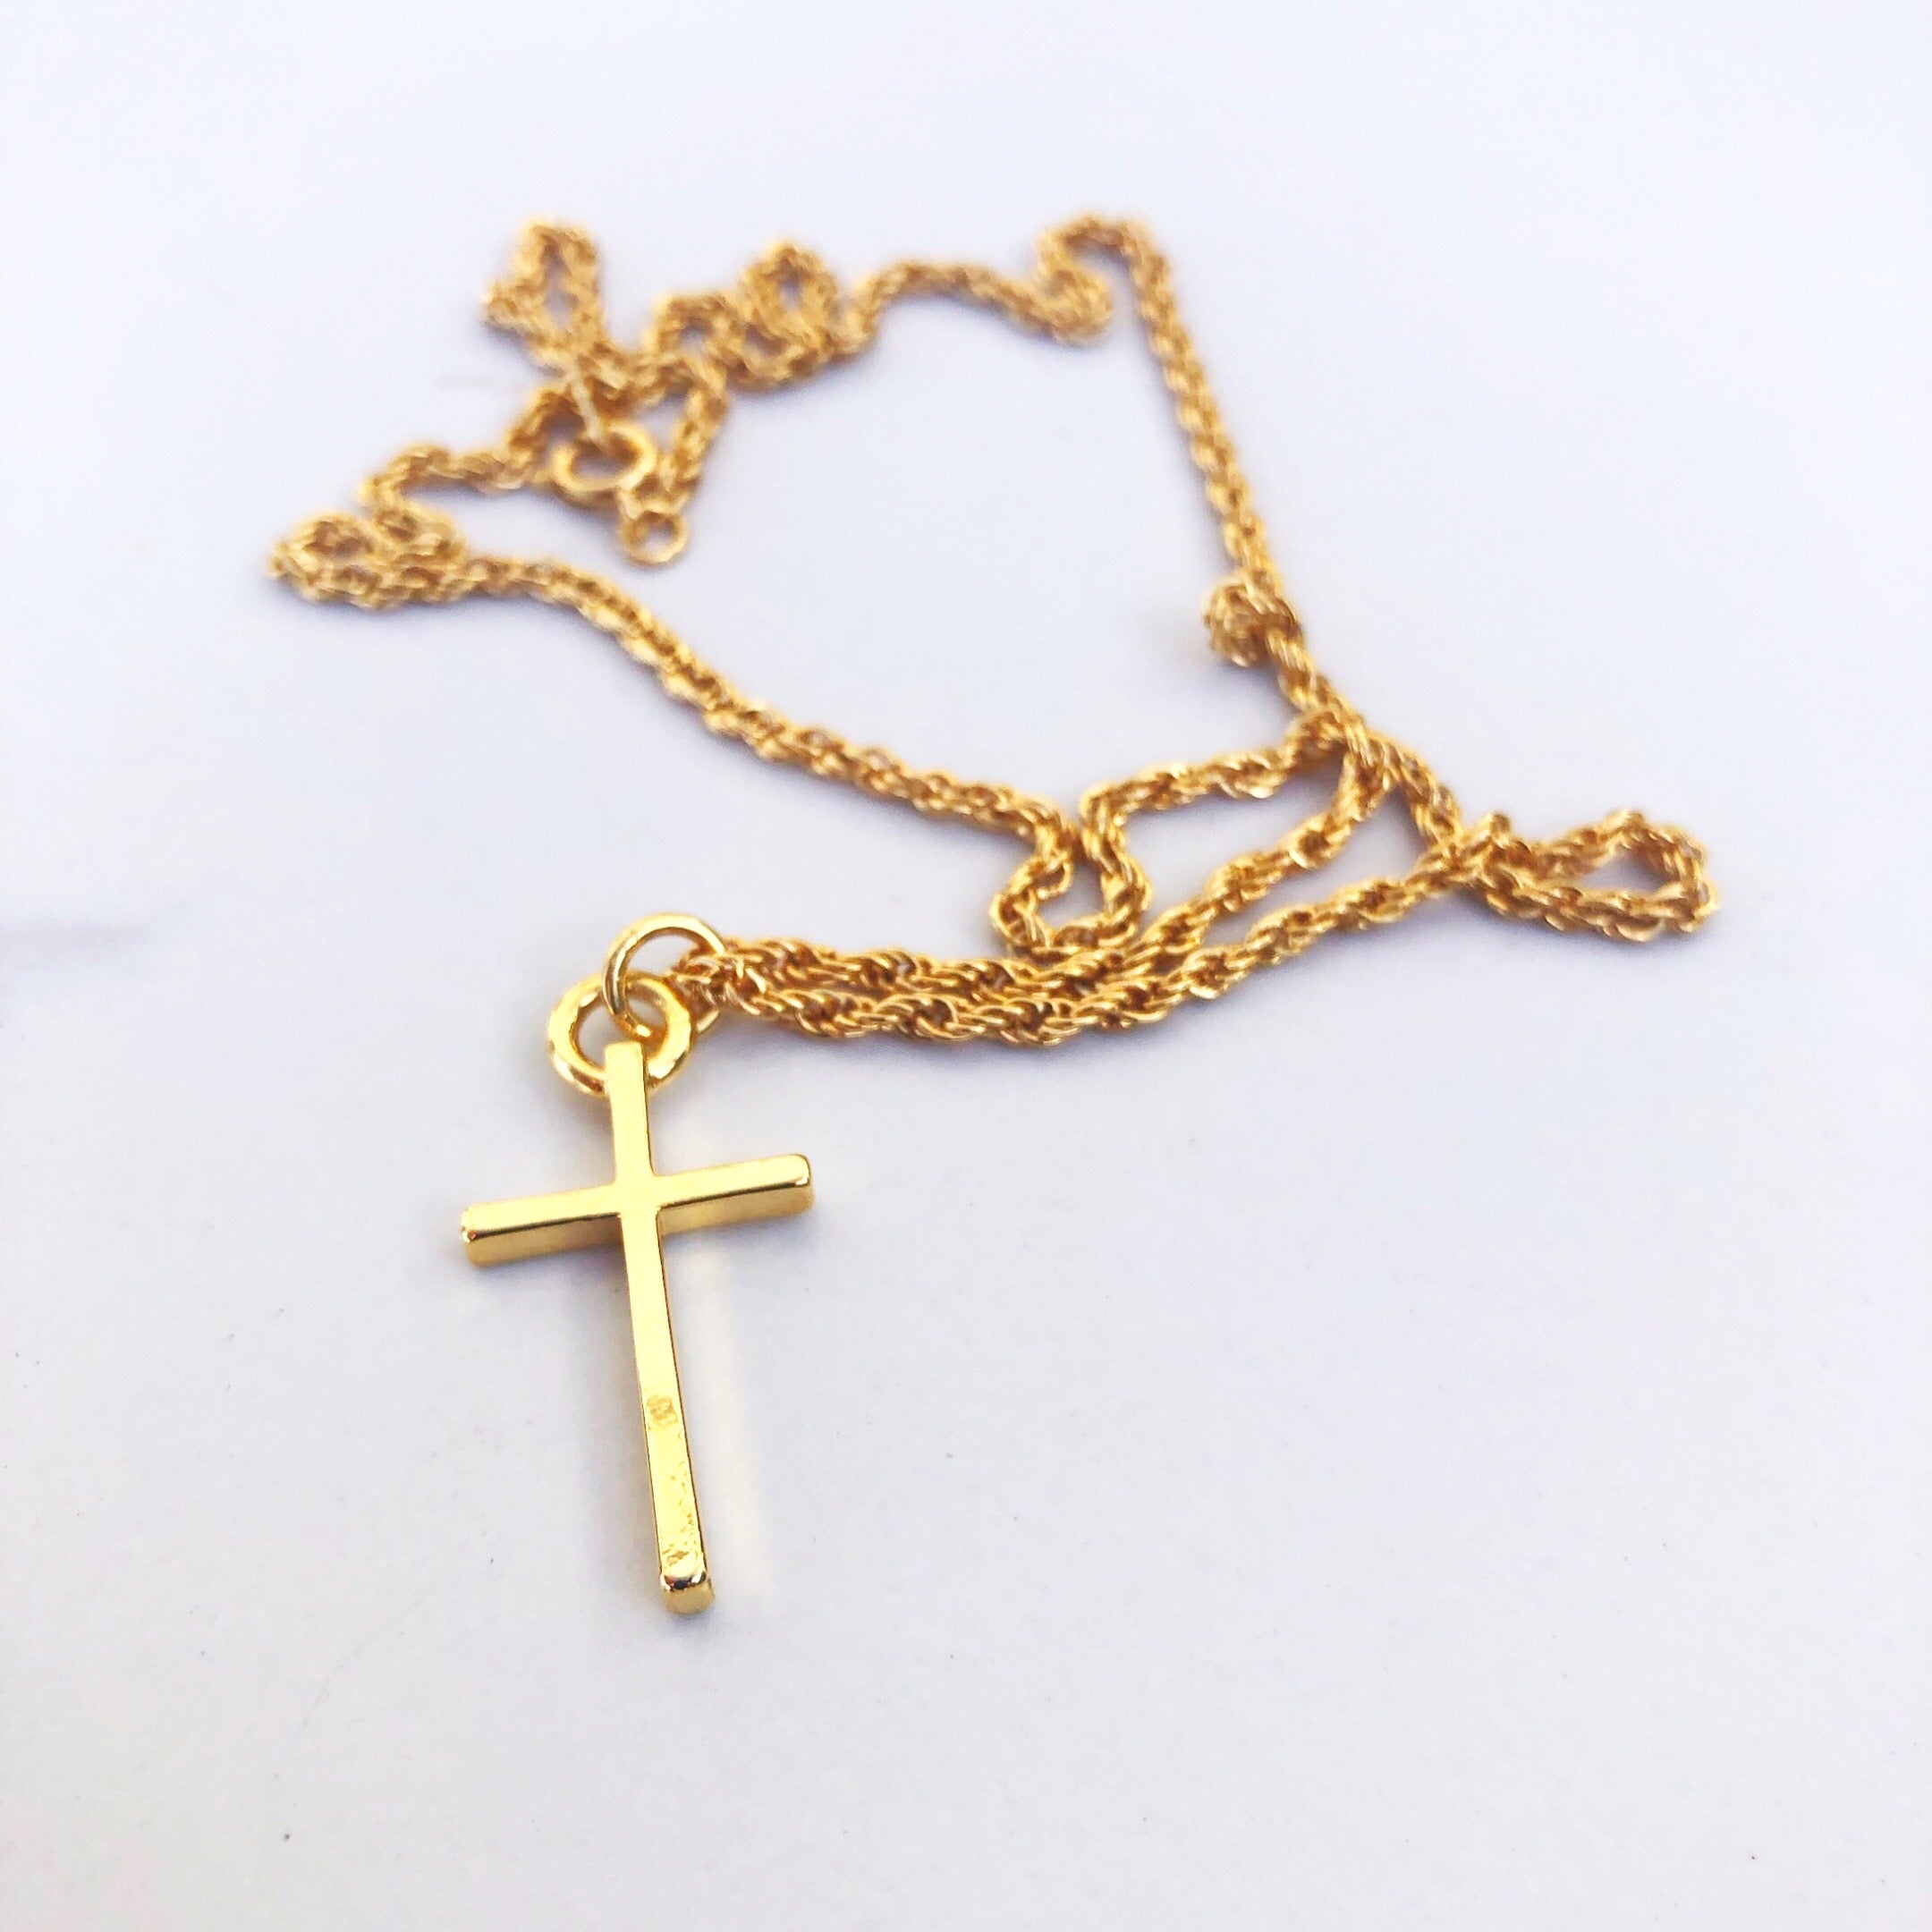 Necklaces – The Catholic Shop